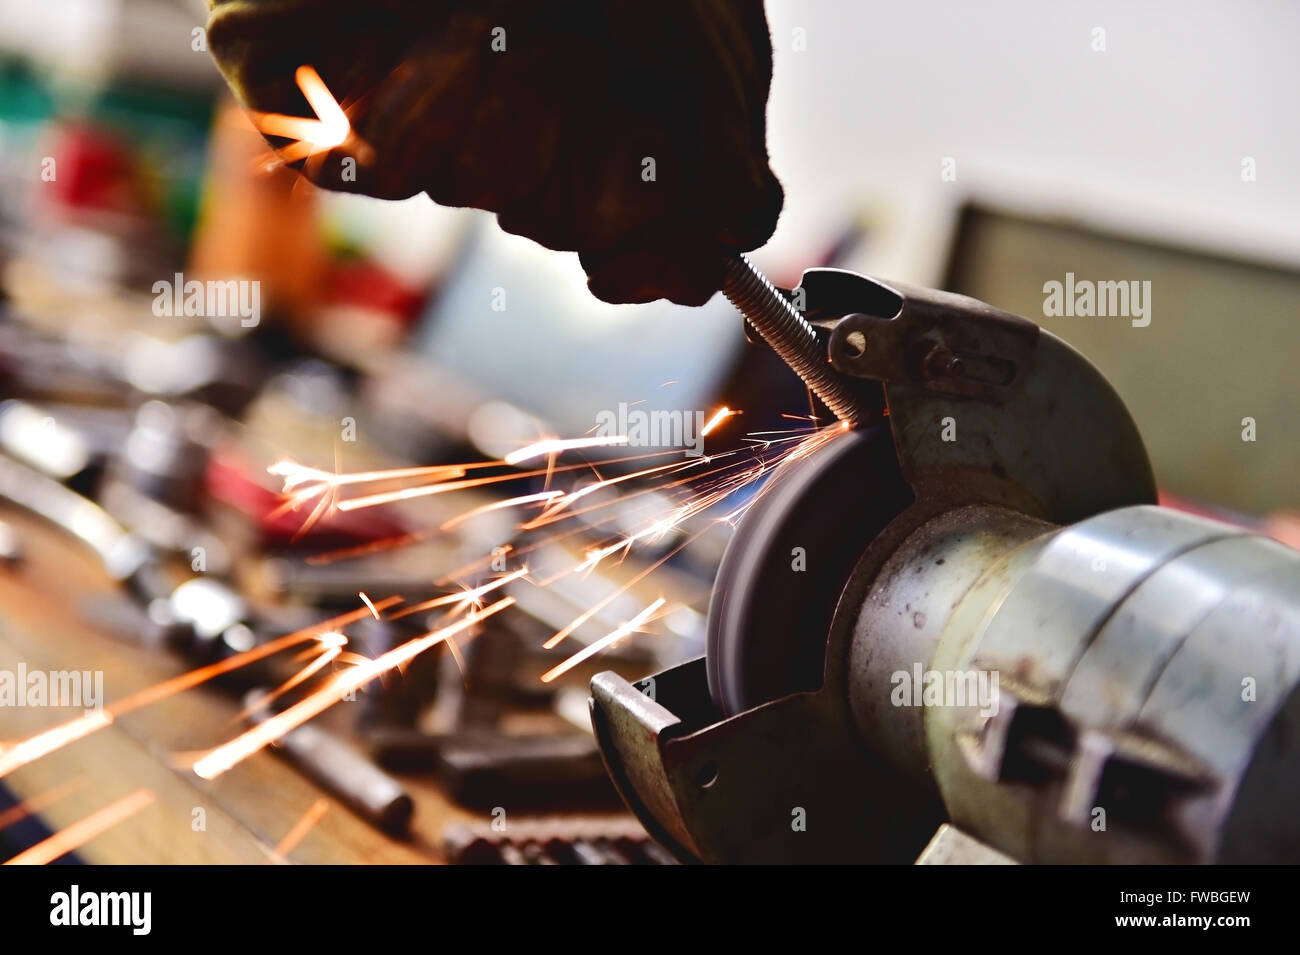 Mechaniker Polieren eine Schraube am industriellen Poliermaschine in einer Garage. Sparks entstammen Schleifscheibe. Stockfoto